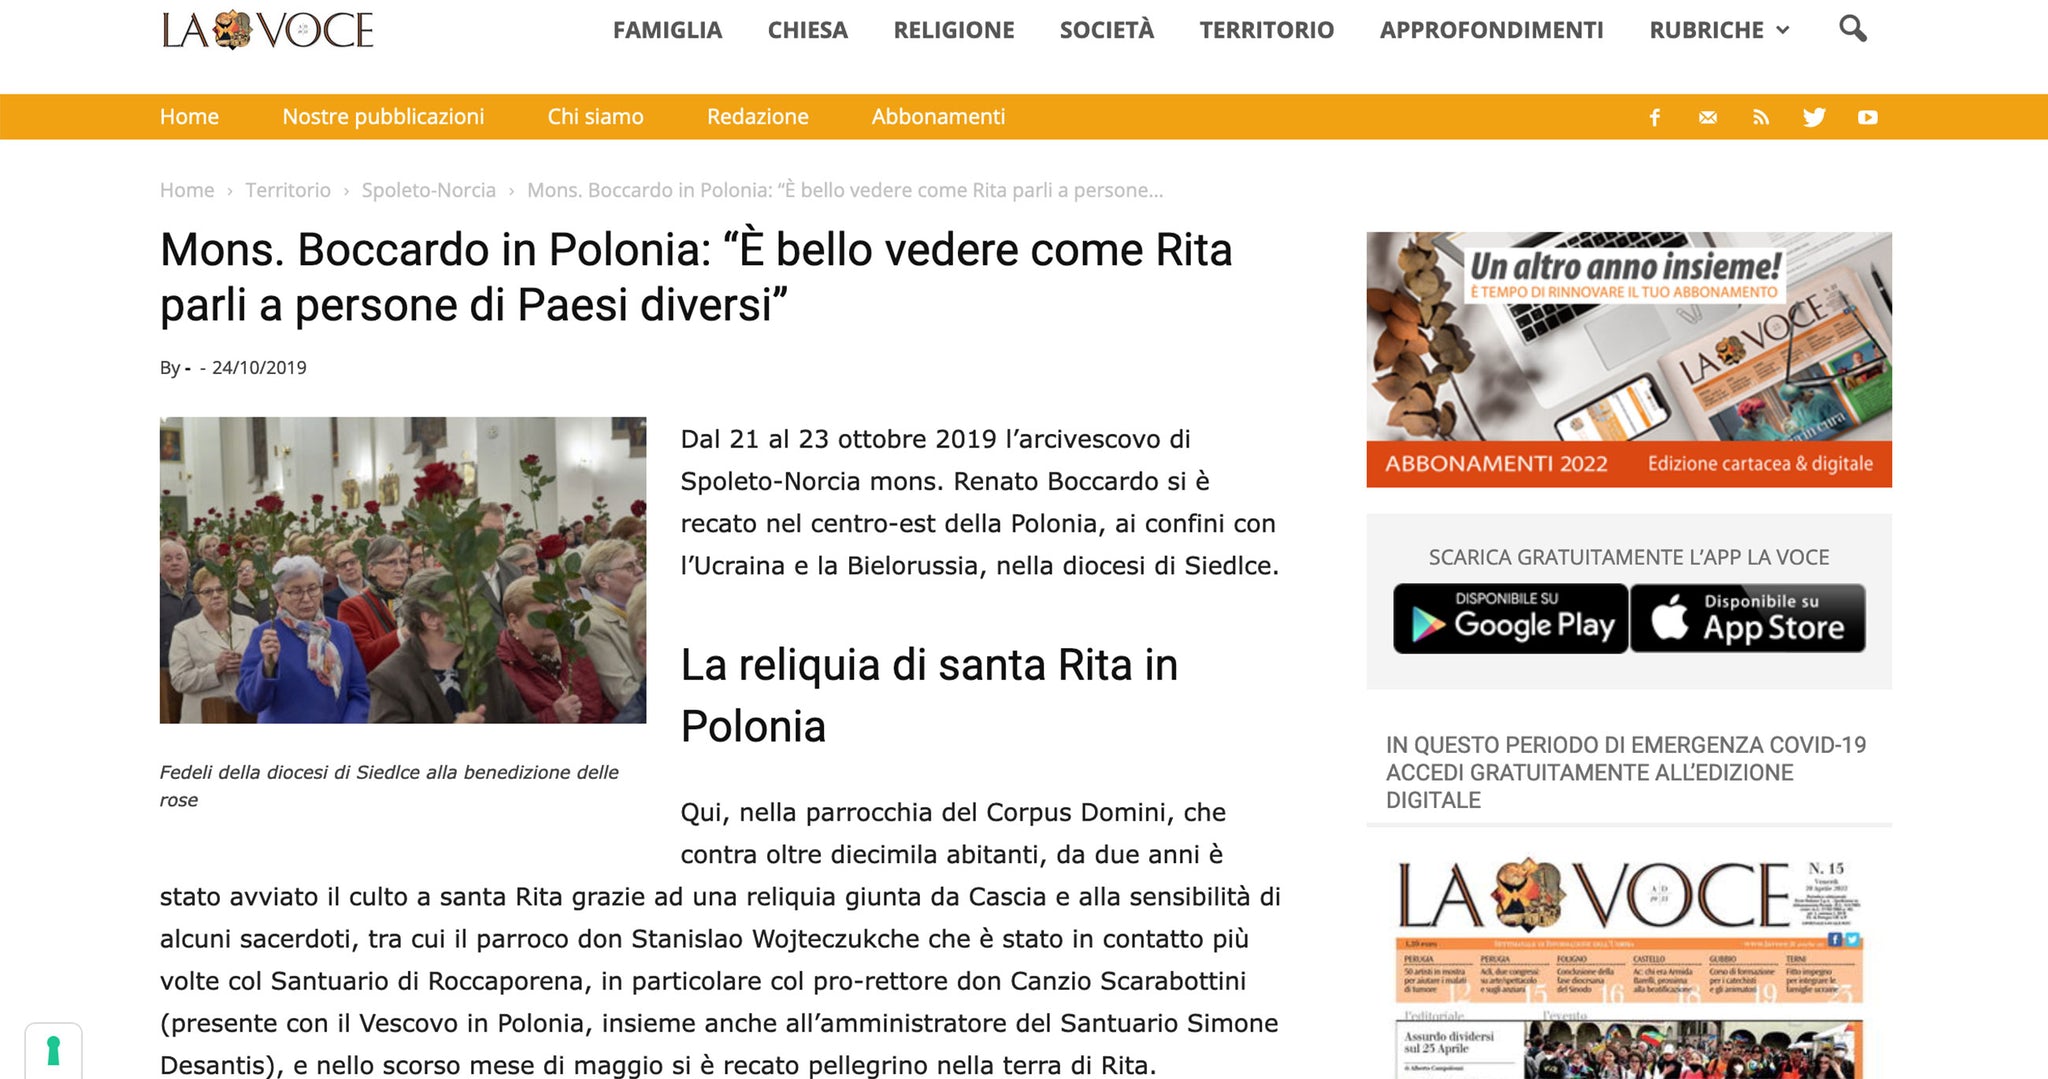 Mons. Boccardo in Polonia: “È bello vedere come Rita parli a persone di Paesi diversi”